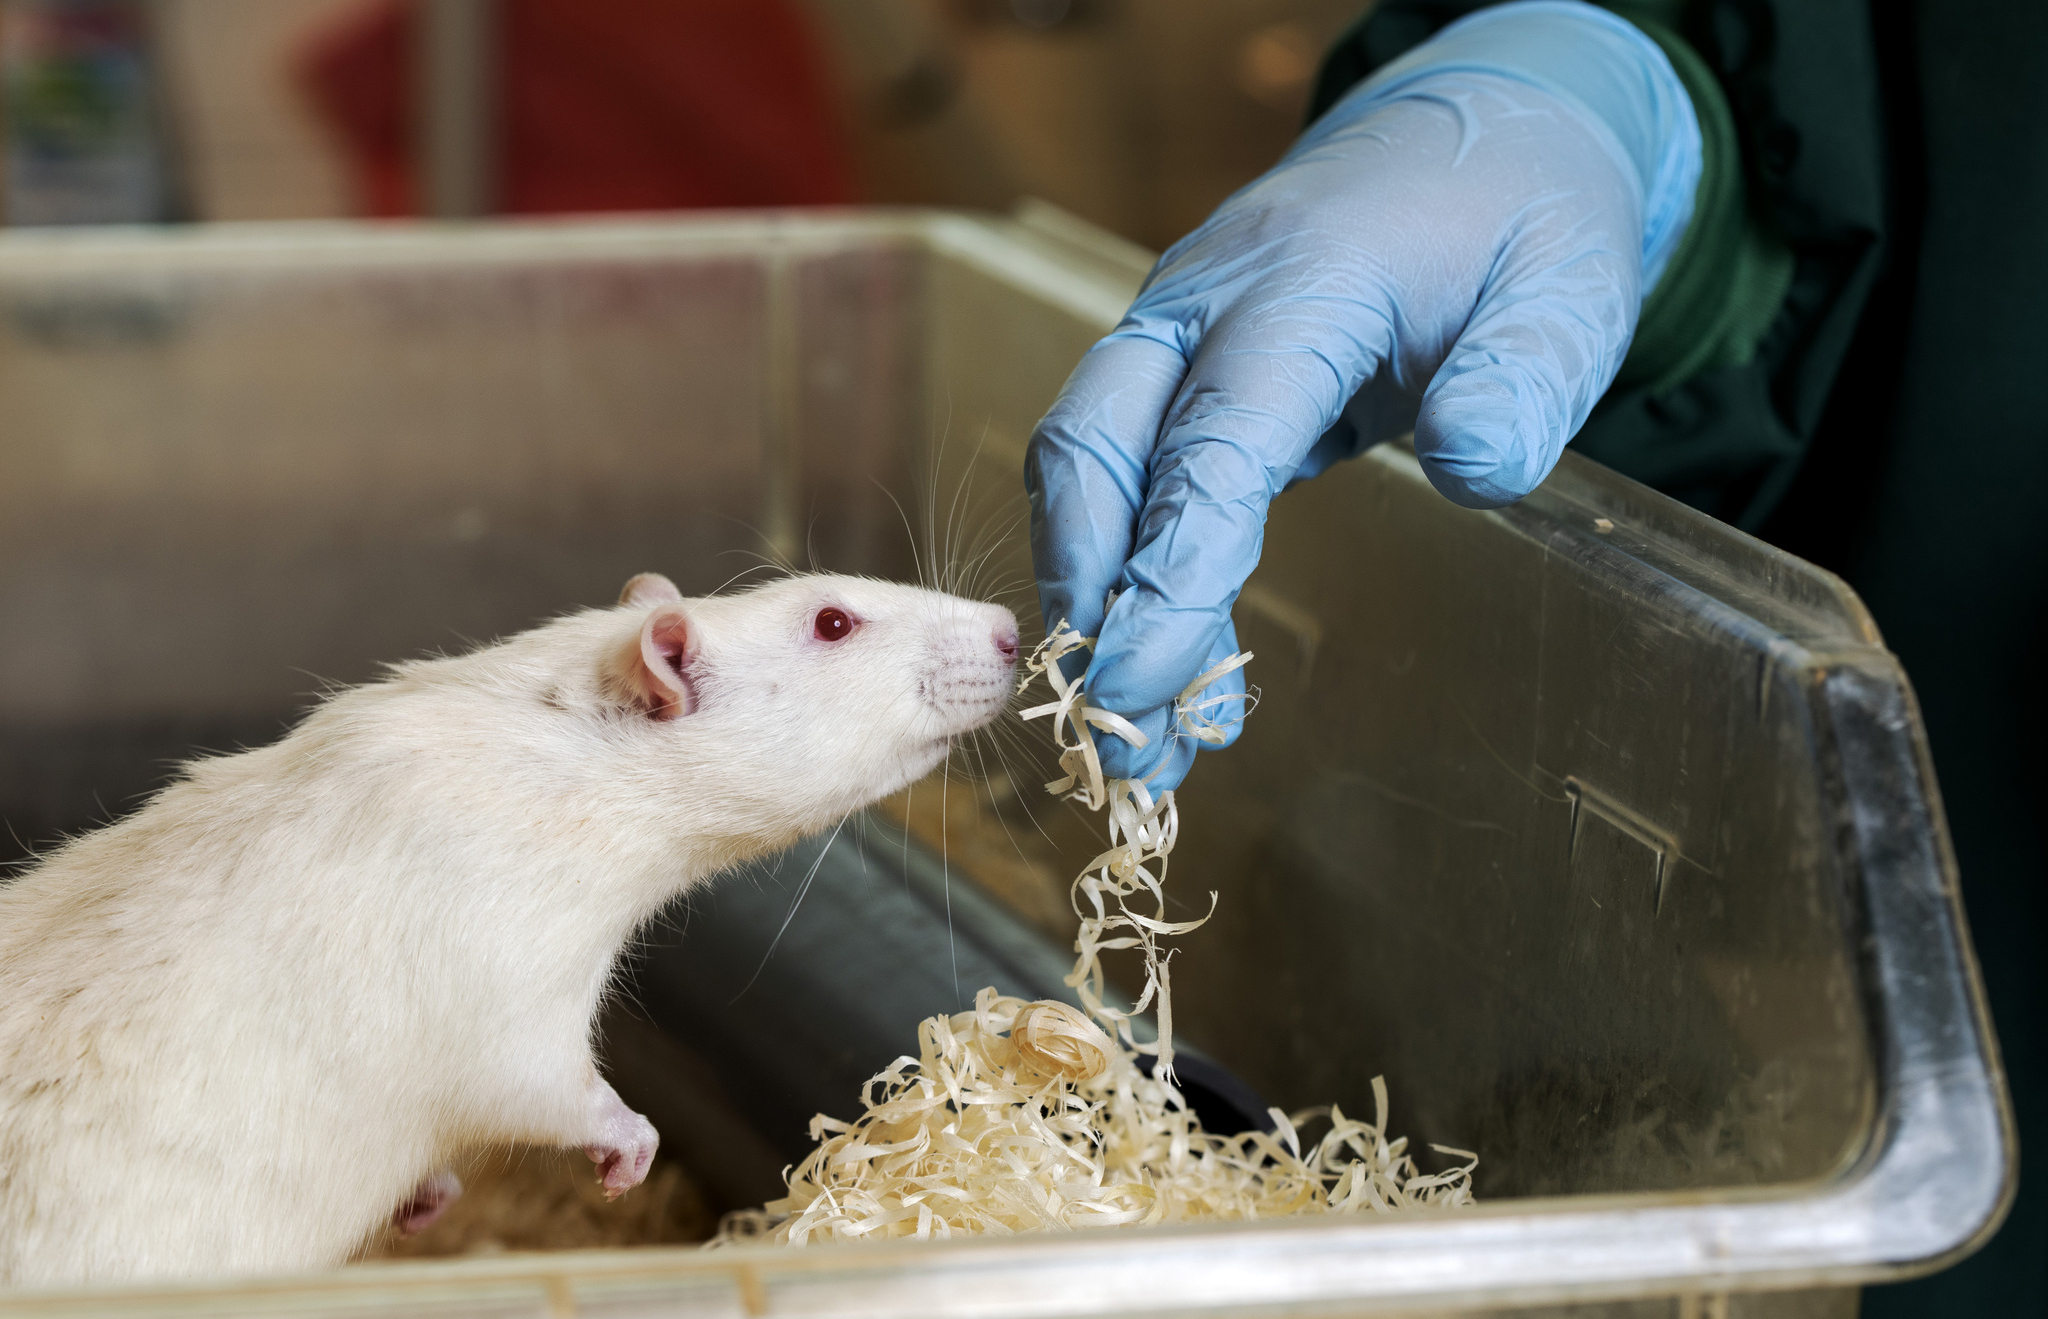 En vit råtta i en låda av genomskinlig plast sträcker sig mot en hand som bär en blå handske och håller i lite strö.